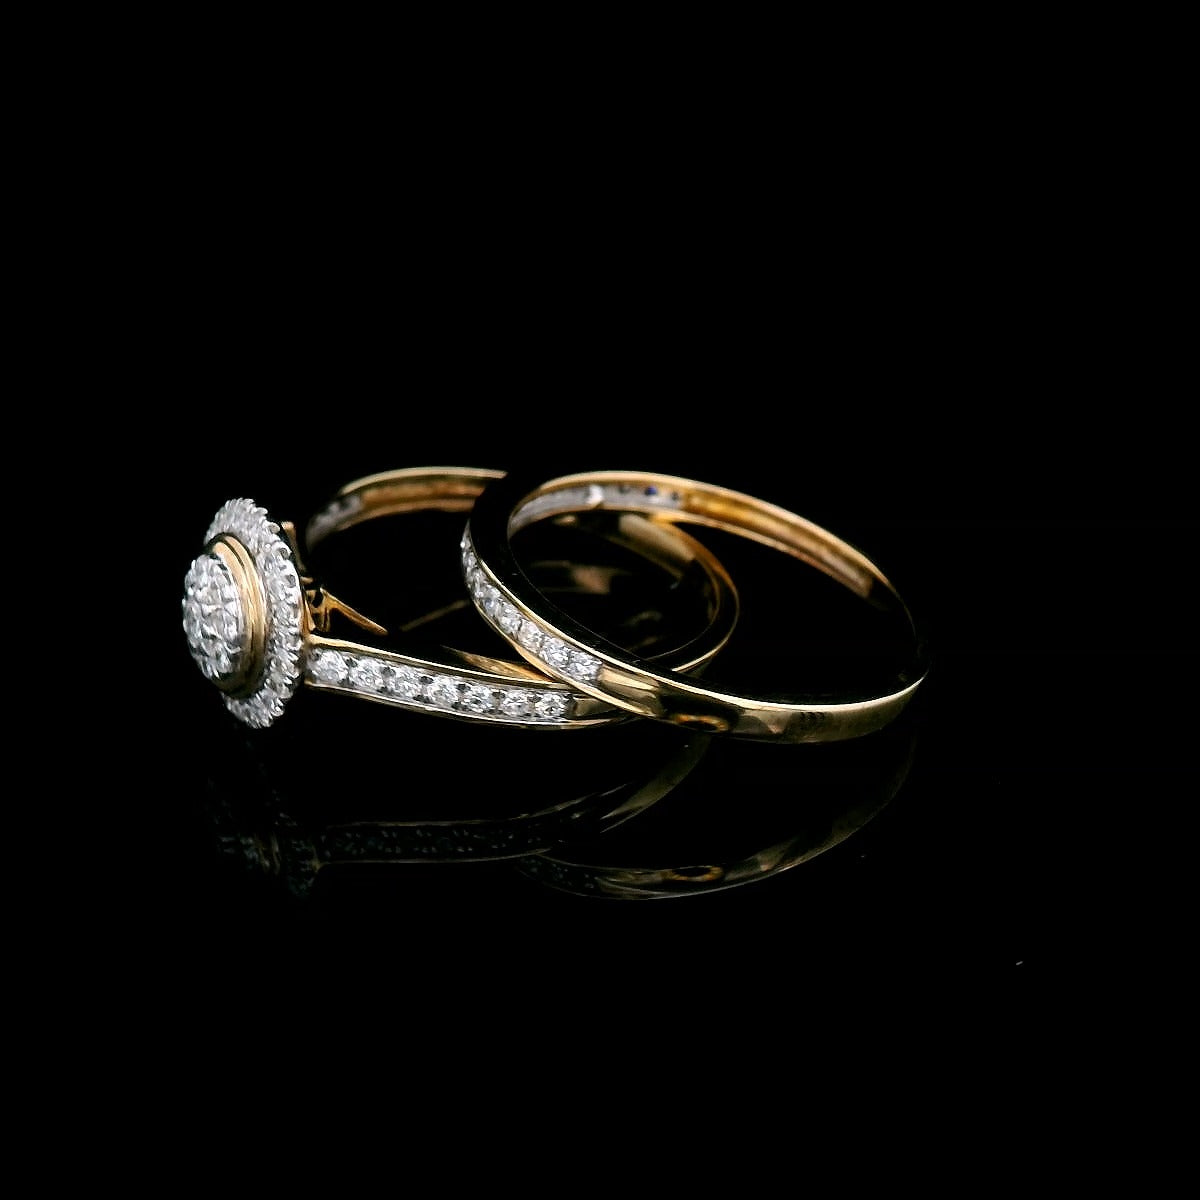 0.50 Carat Diamond Ring Set in 9 Carat Yellow Gold